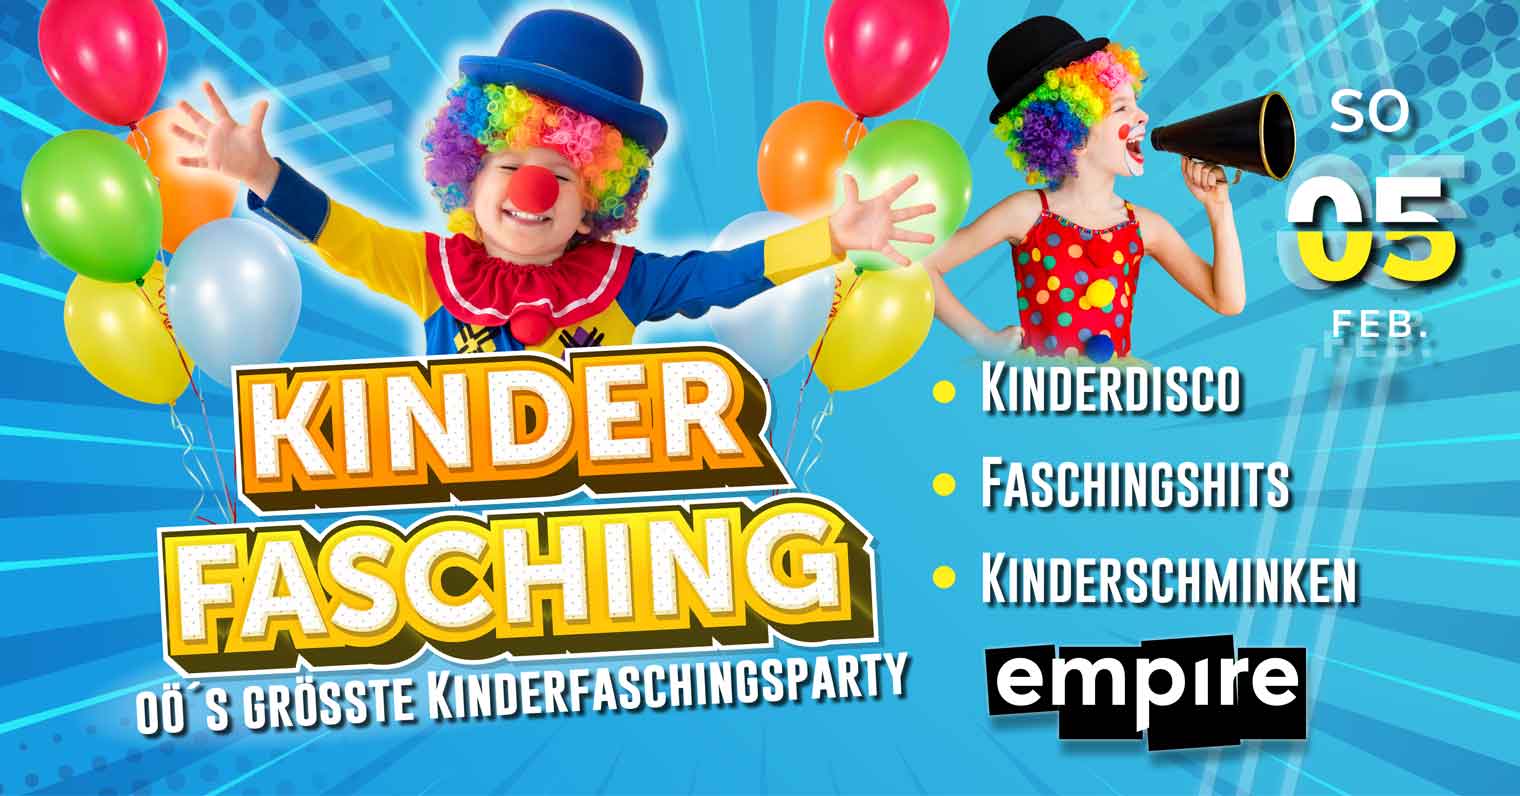 Kinderfasching - OÖs größte Kinderfaschingsparty | SO 05.02.